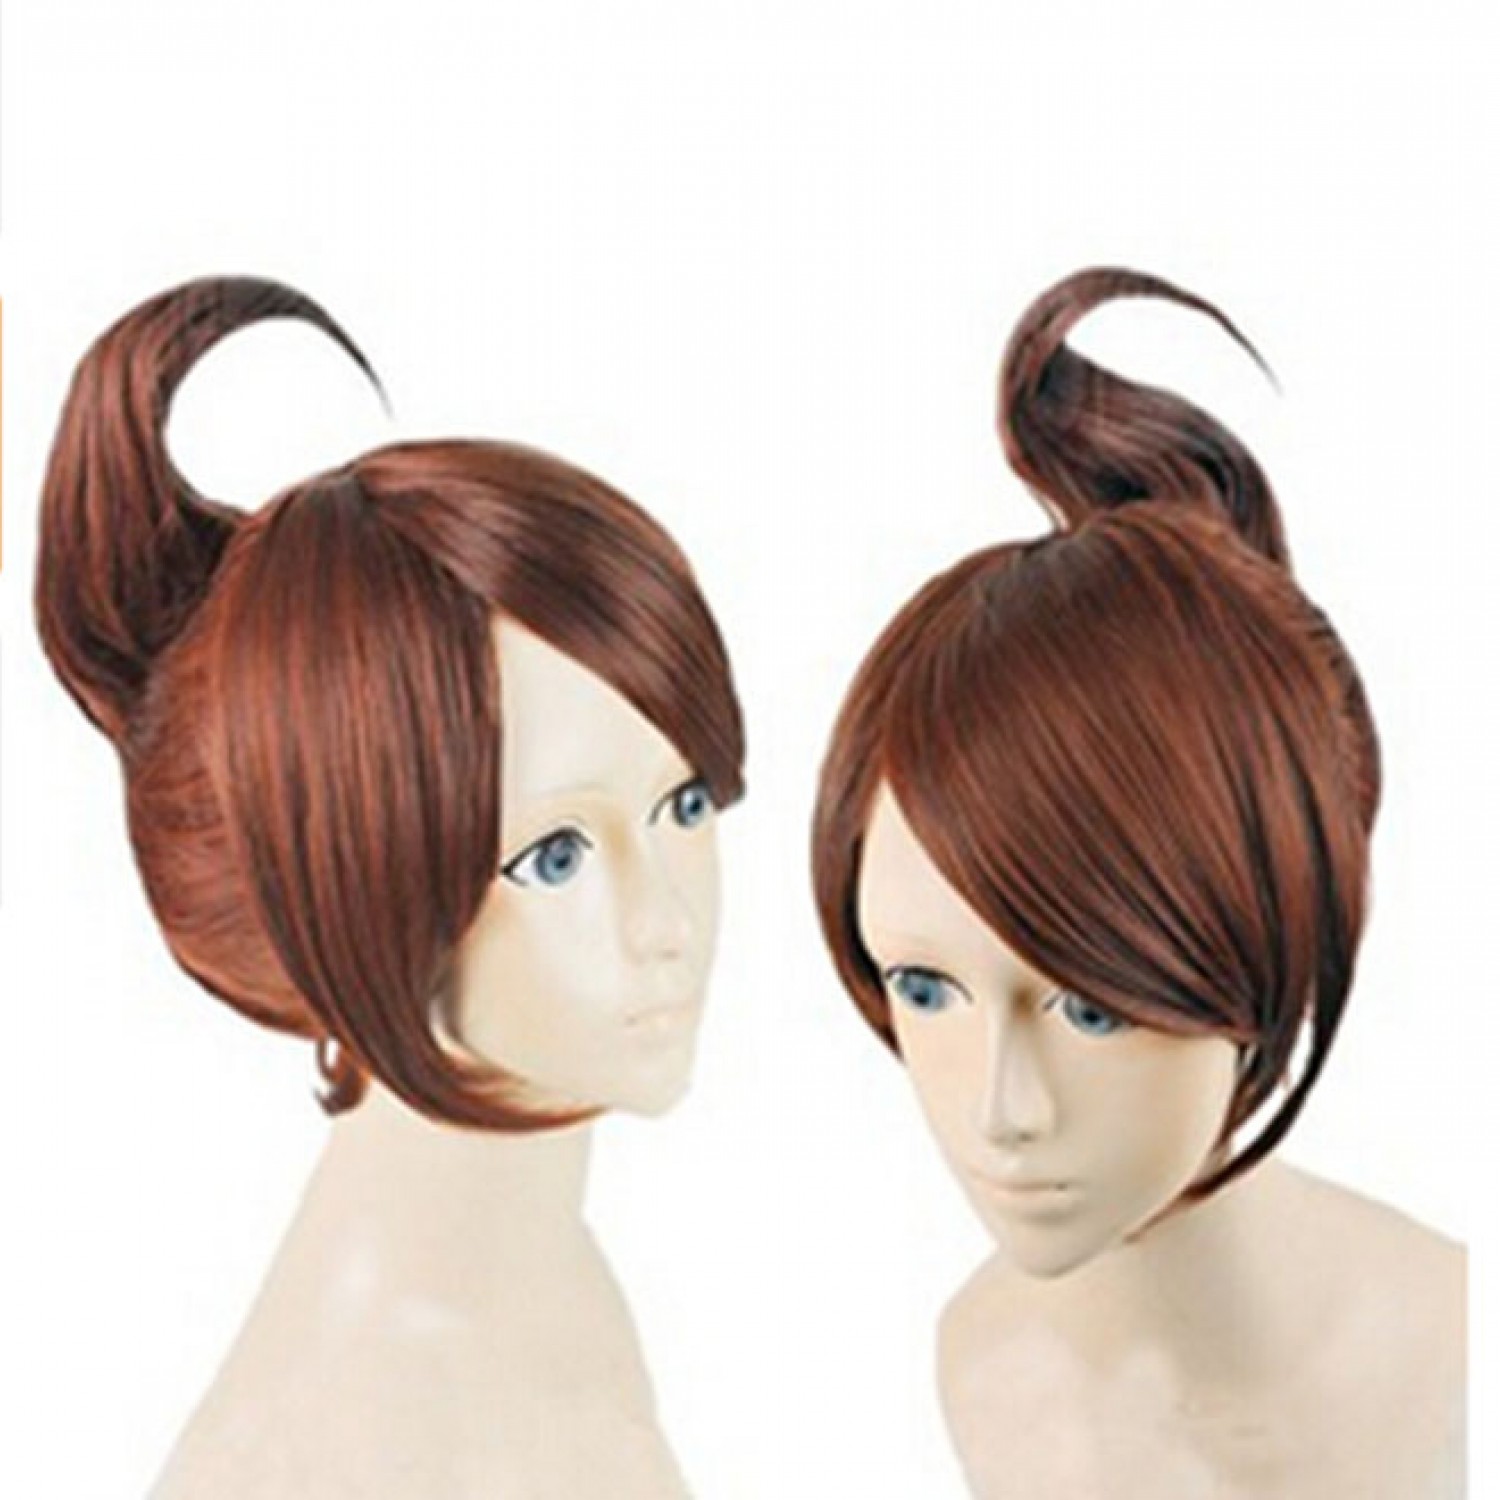 Danganronpa Trigger Happy Havoc Aoi Asahina Brown Cosplay Hair Wig Free Shipping 19 99